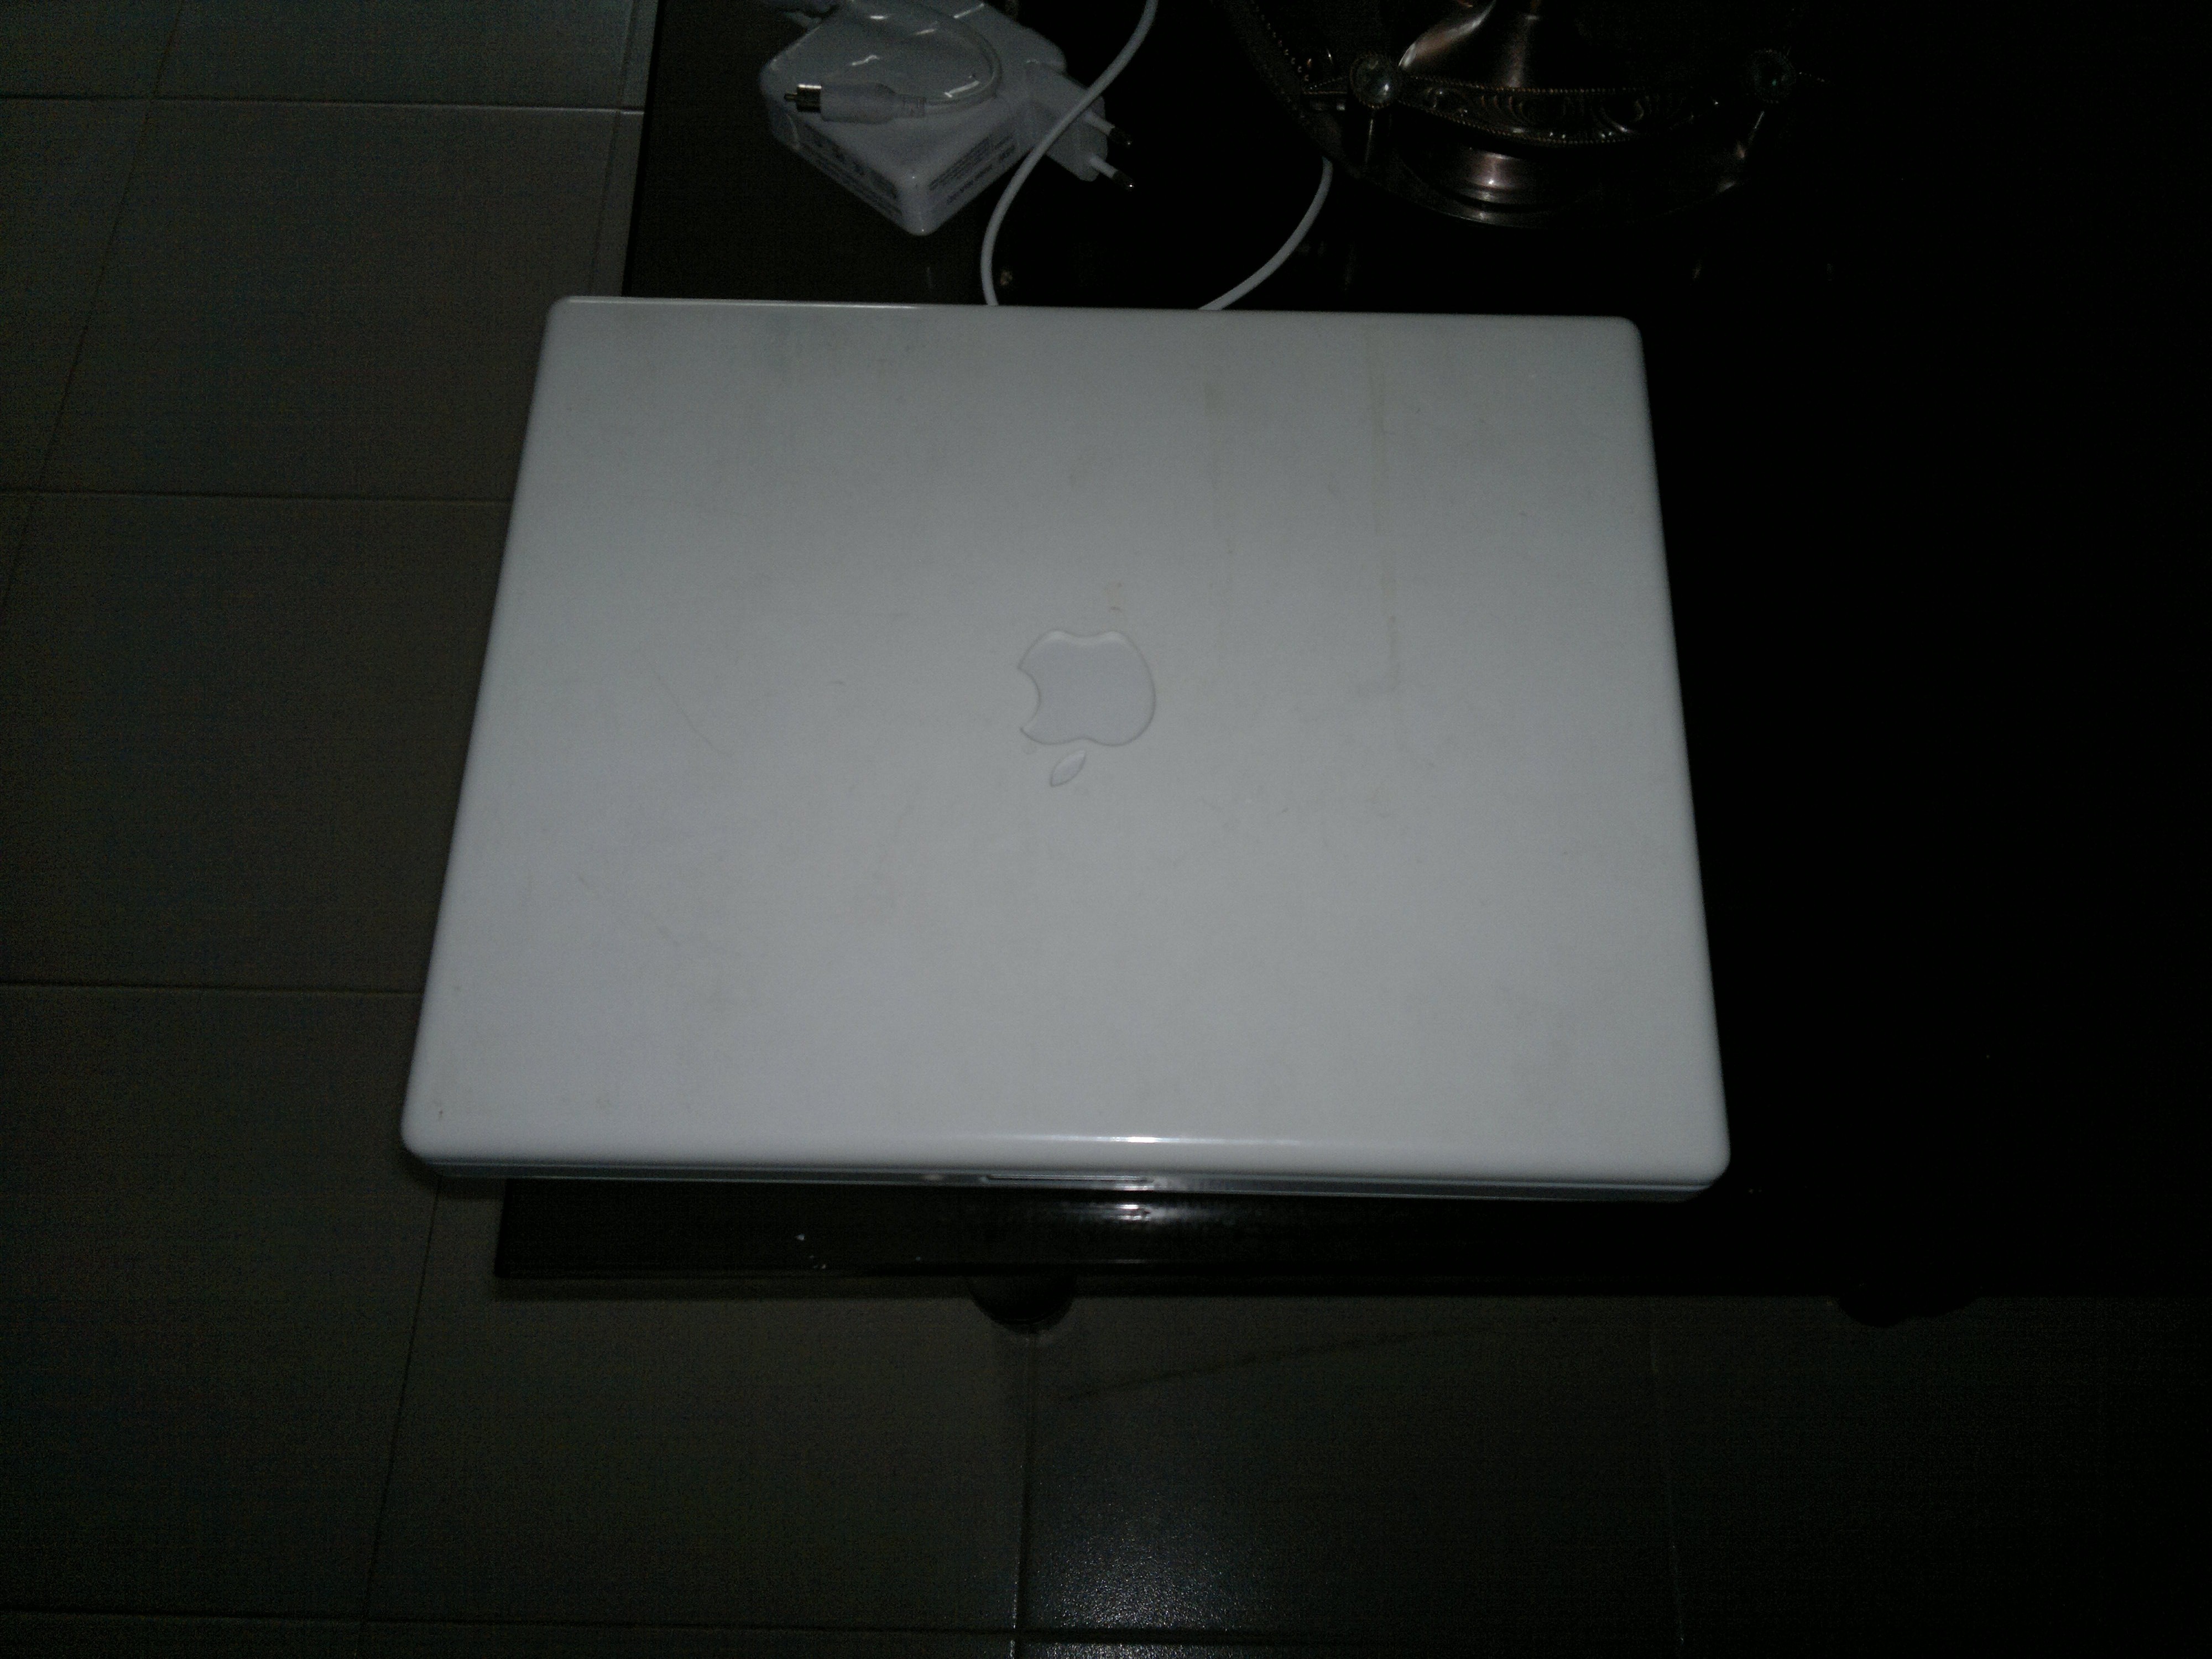 mac ibook g4 large image 0